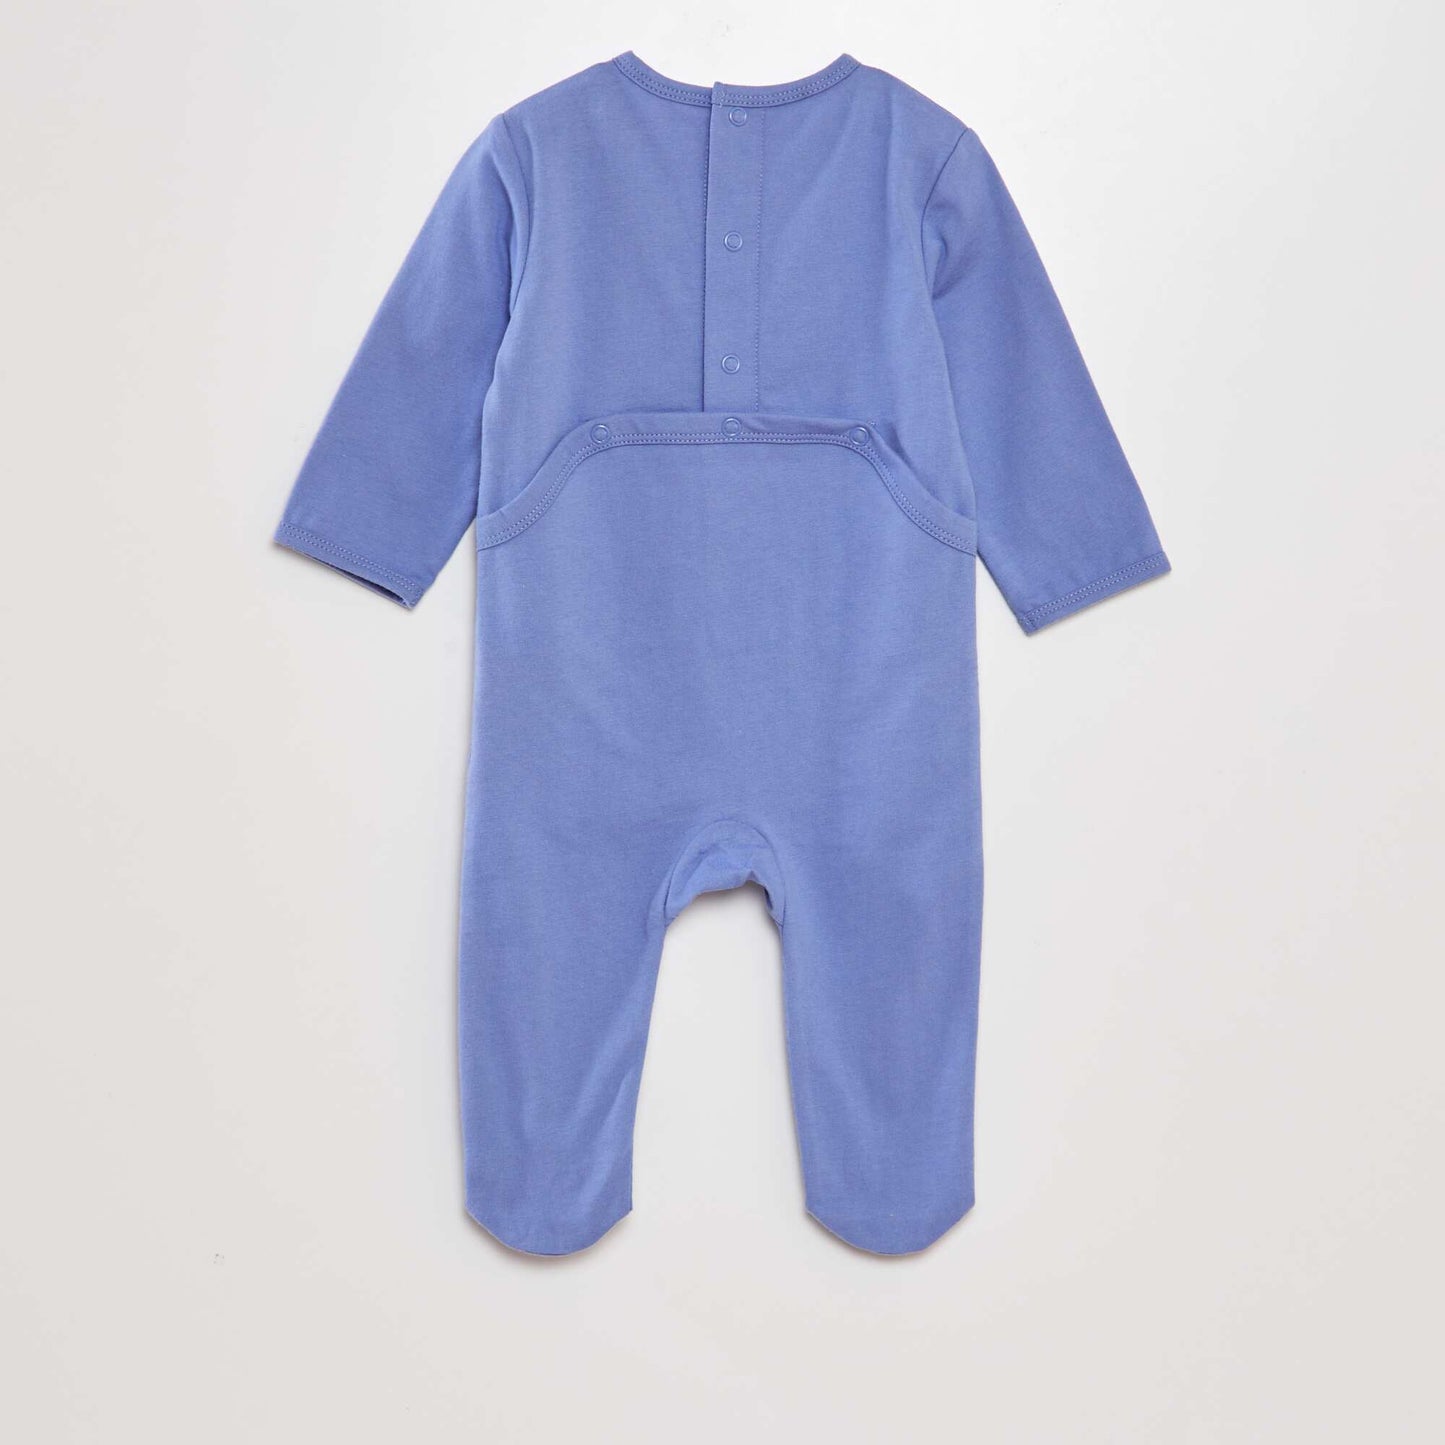 Cotton sleepsuit pyjamas BLUE